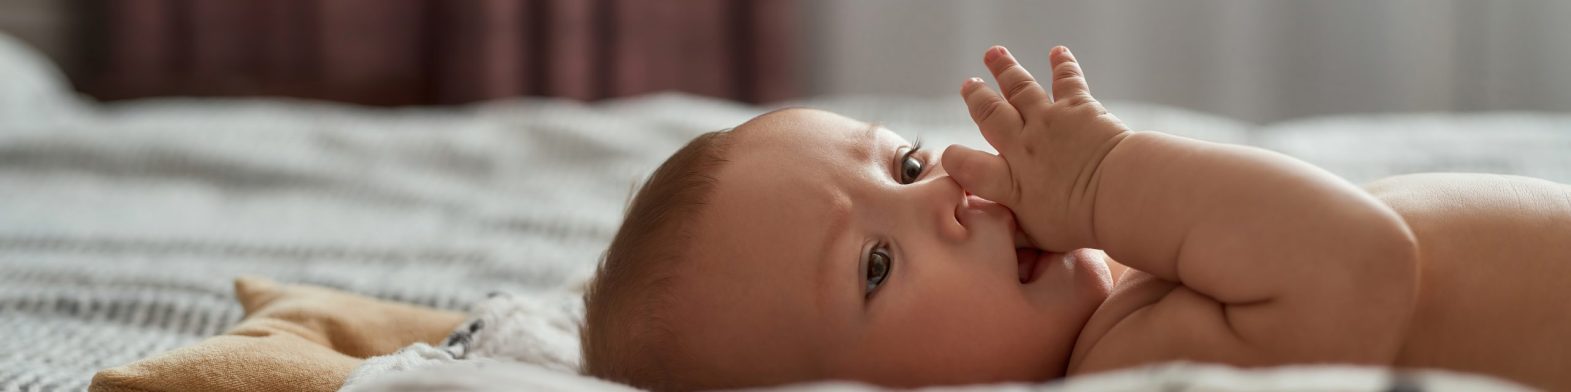 Poussées dentaires chez votre bébé : comment les soulager ? cover